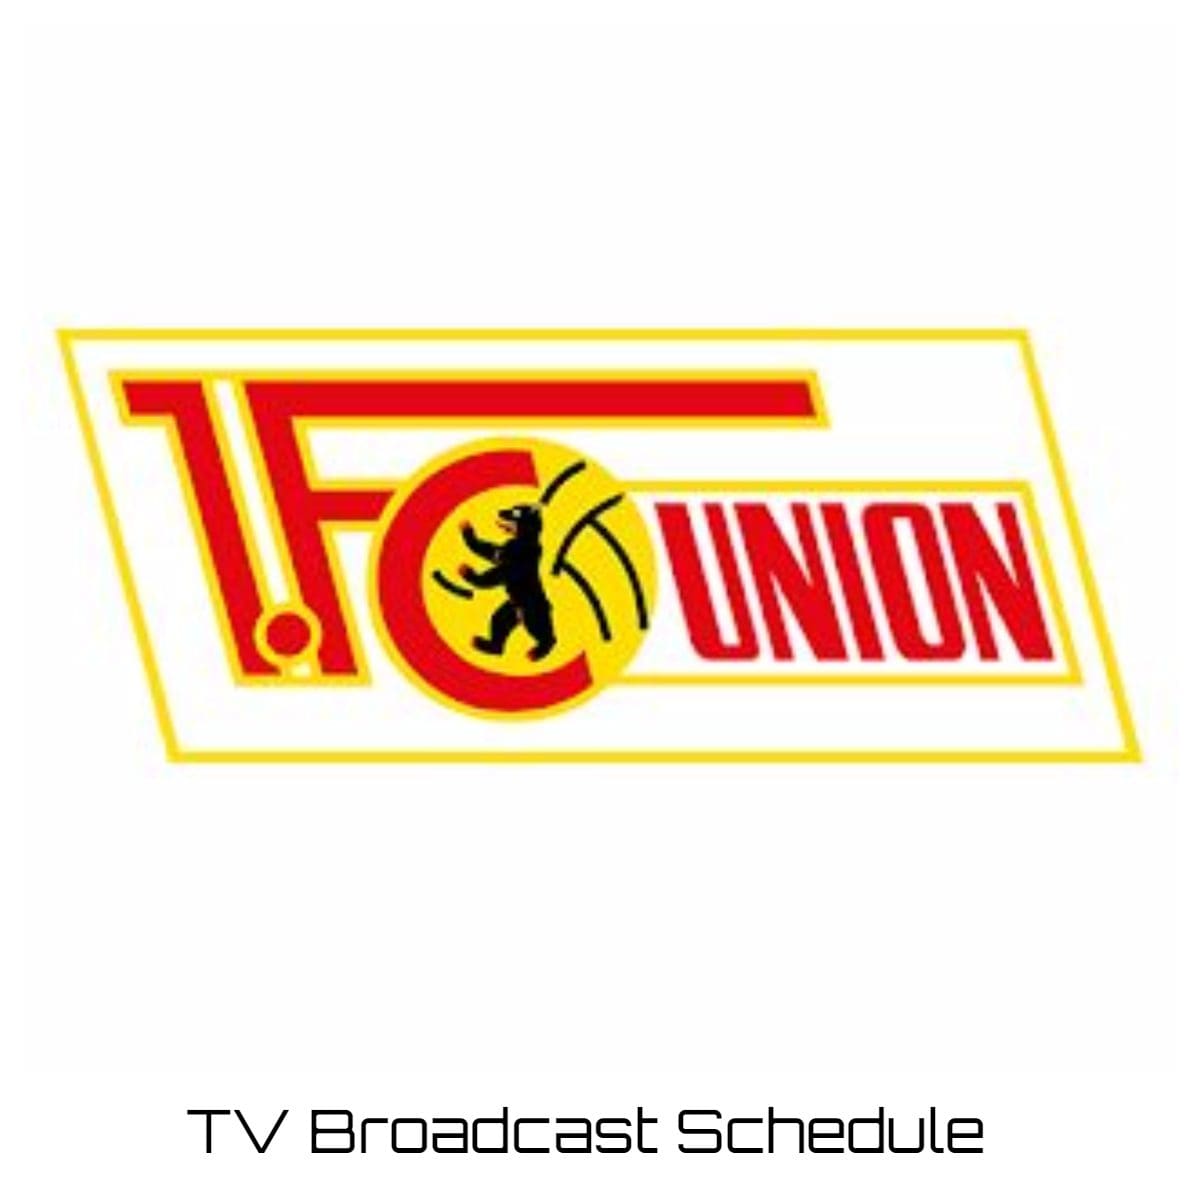 Union Berlin TV Broadcast Schedule